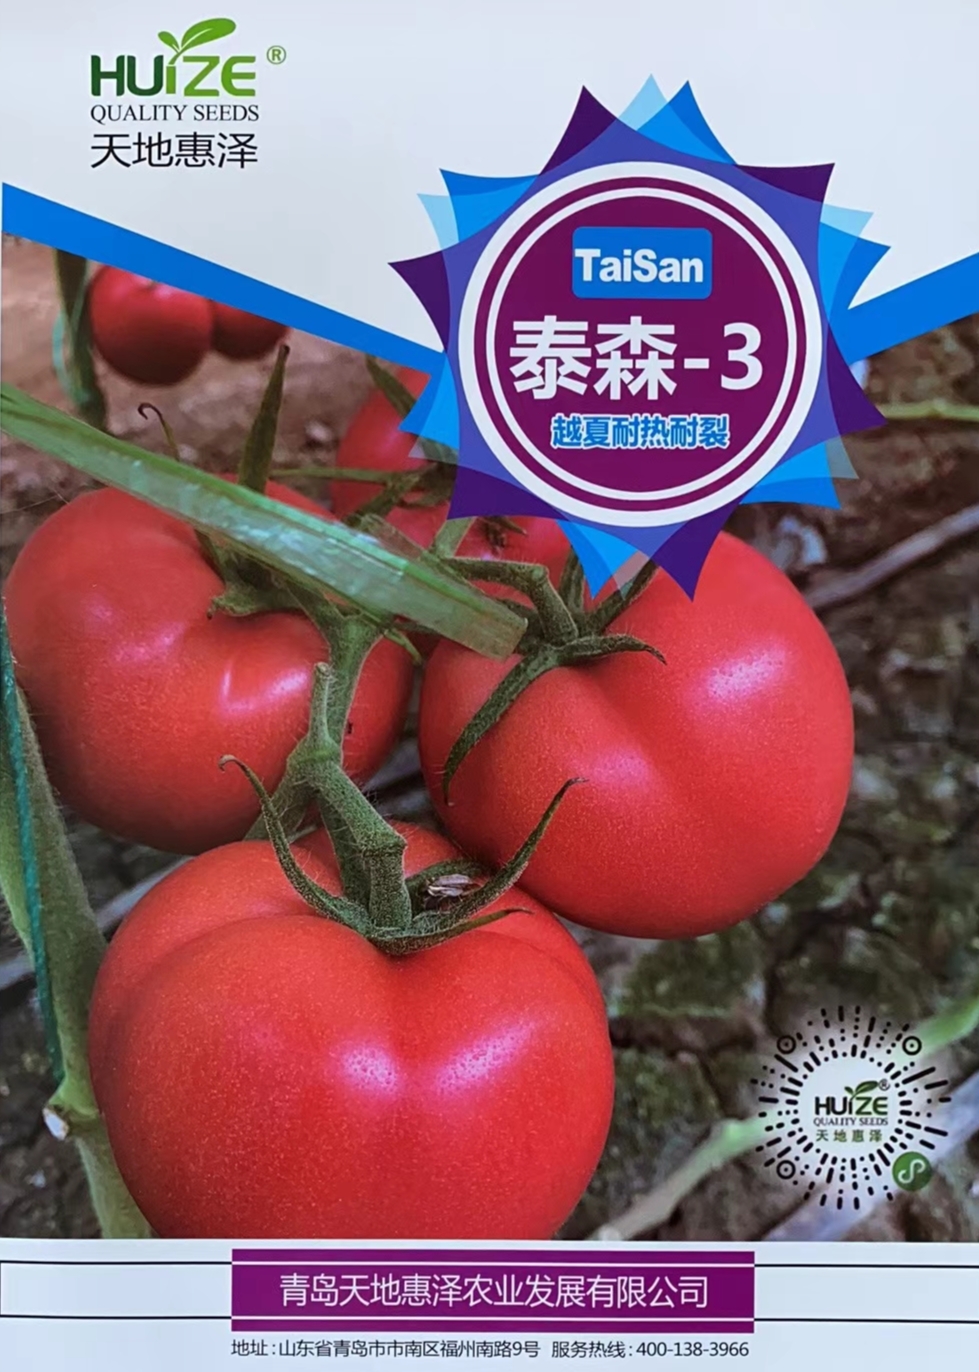 山东青岛泰森-3番茄种子批发公司销售价格 泰森-3